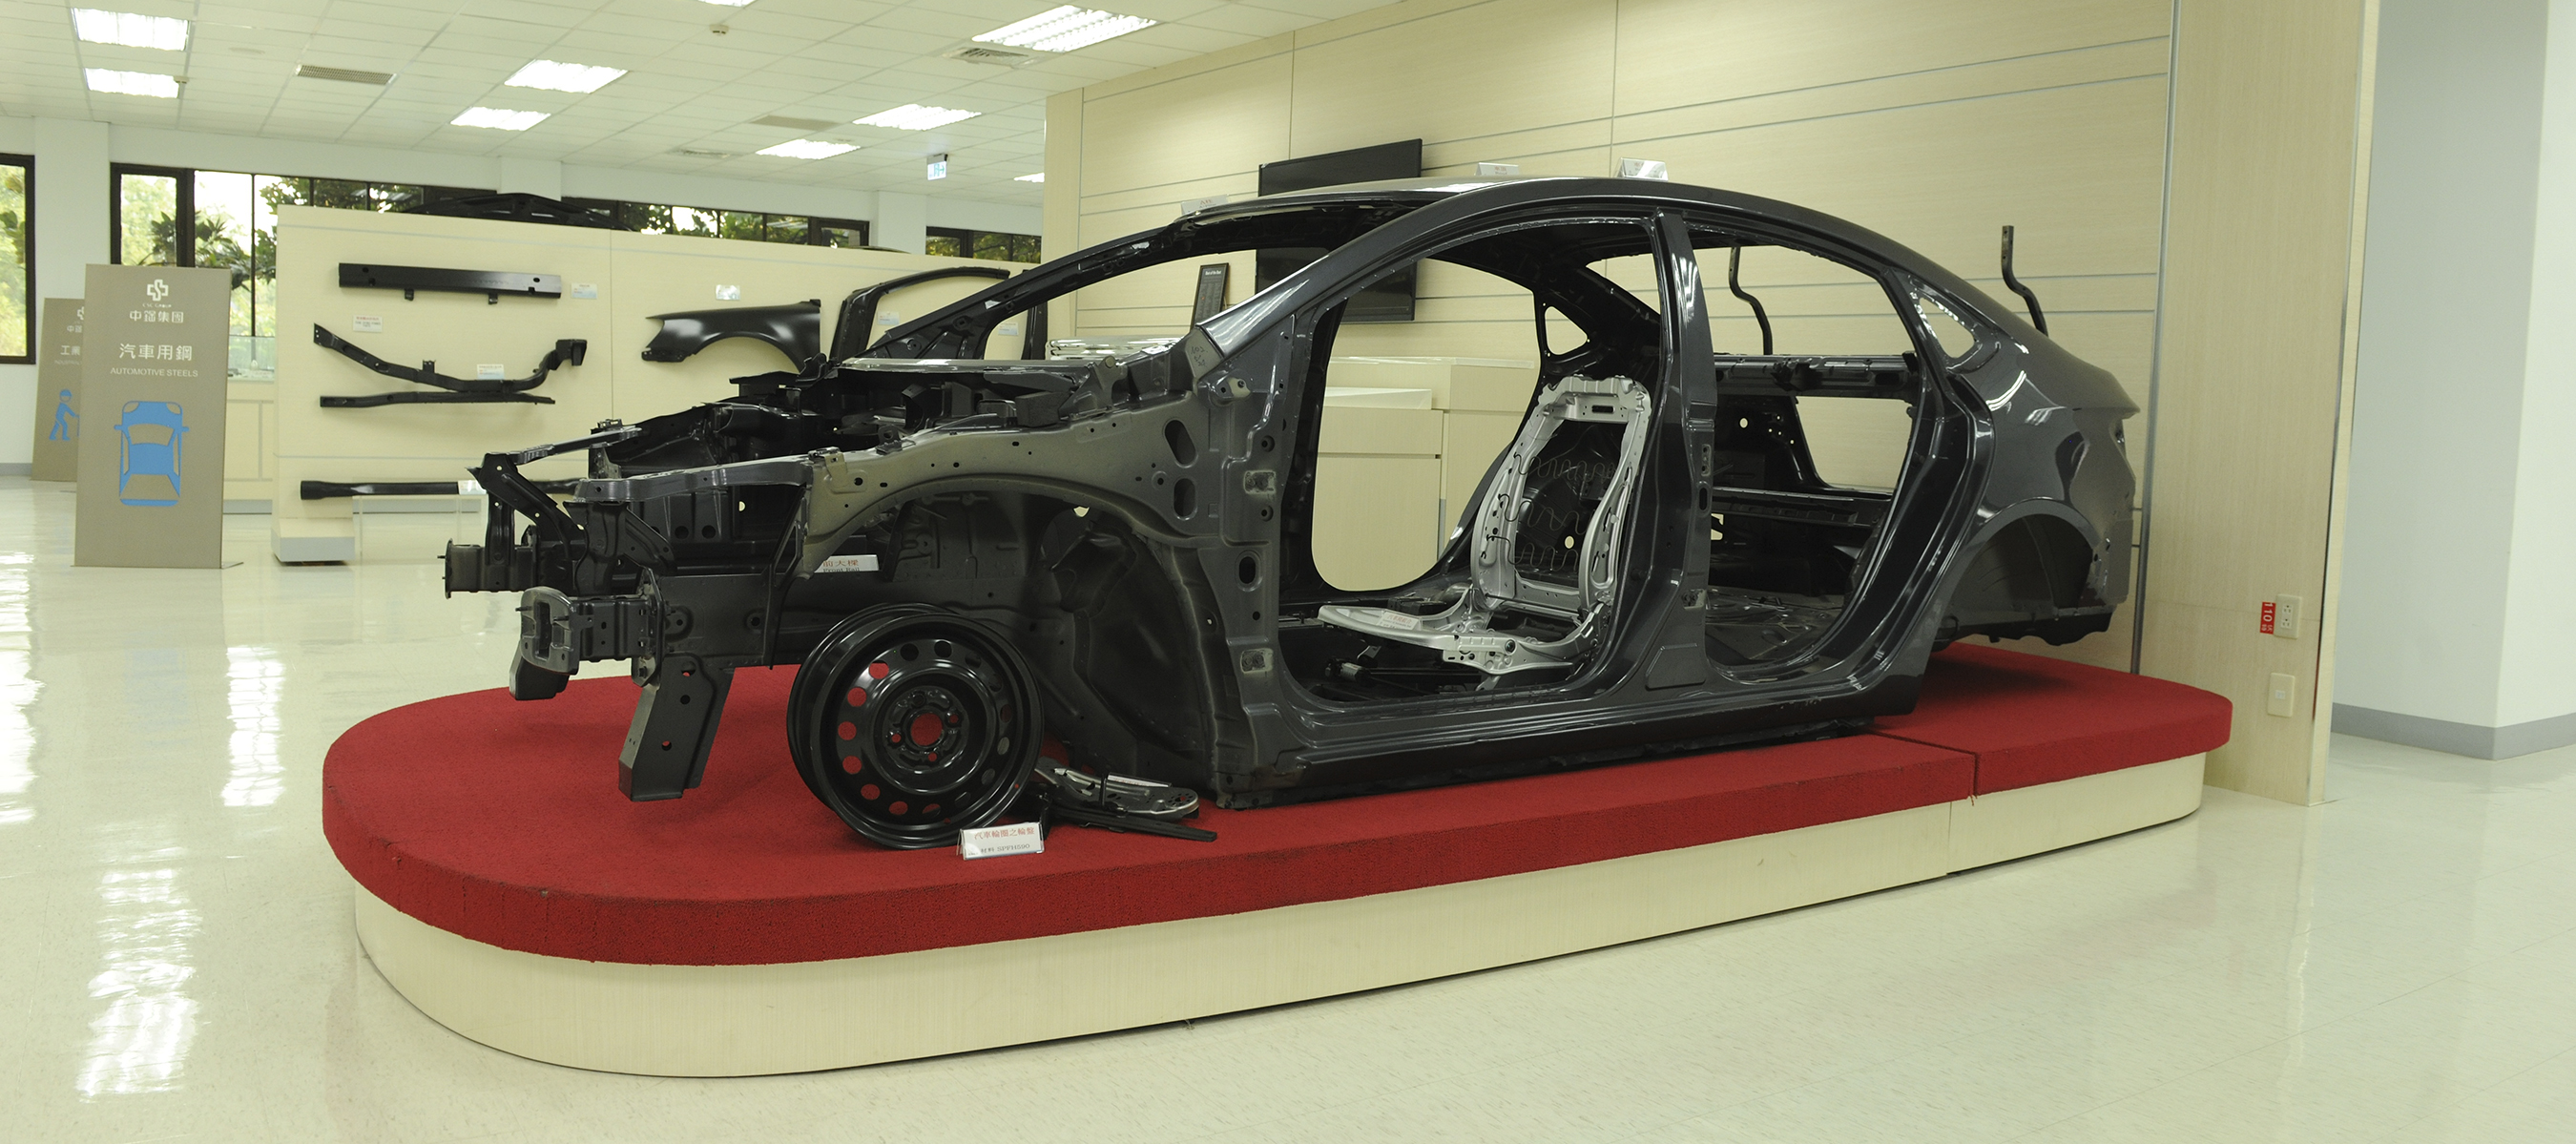 纳智捷luxgen 5 Sedan车款之车体92.6%采用中钢产制钢材，高强度车用钢之占比亦达65%。(中钢/提供)